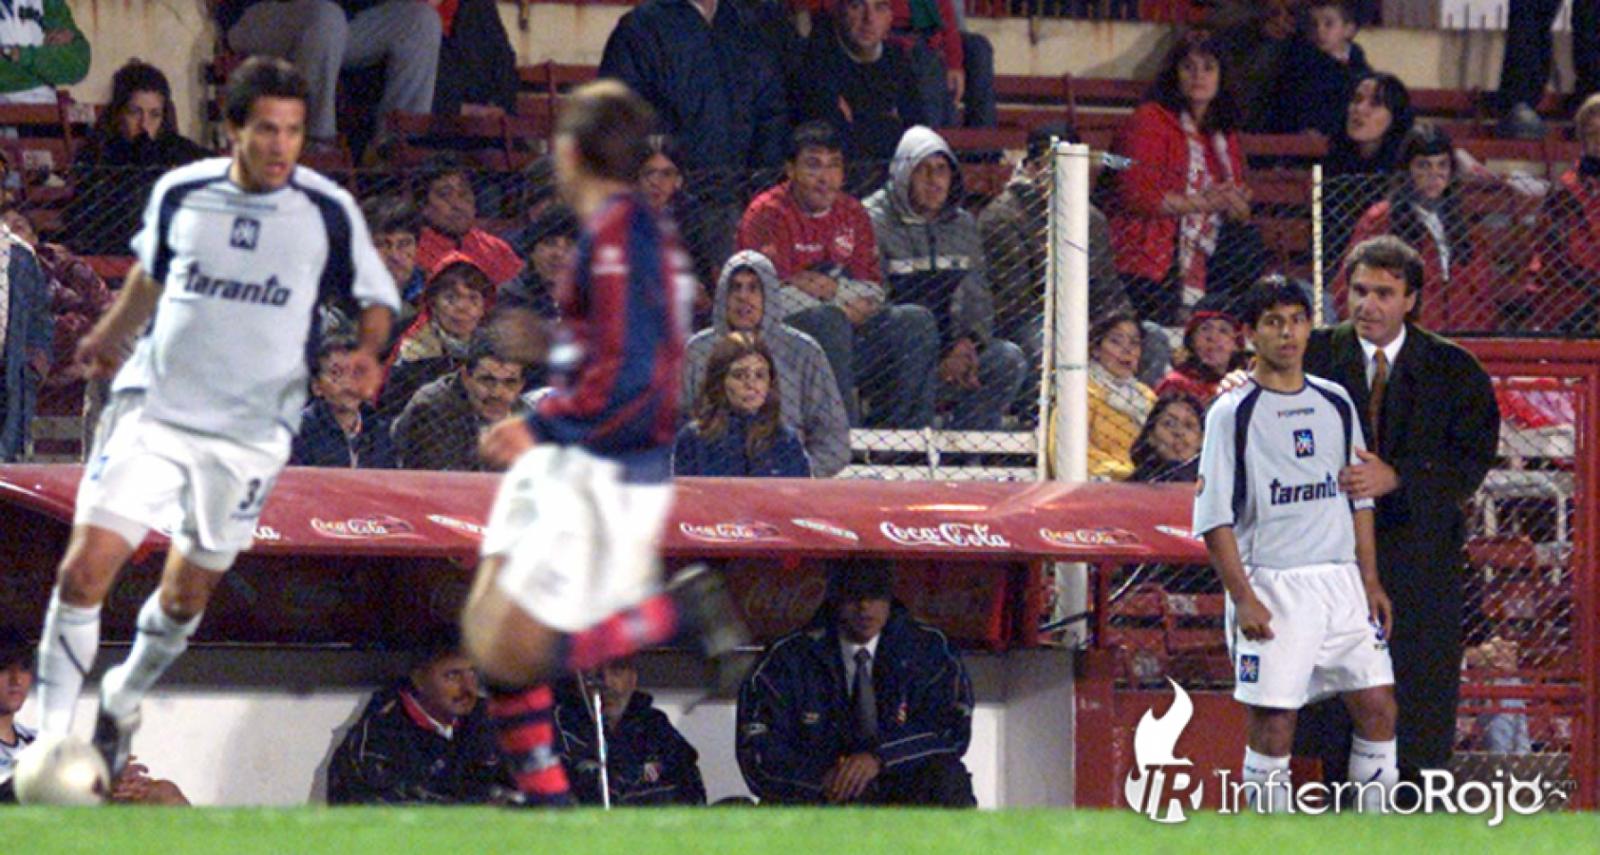 CONMEBOL Libertadores - 🤩🇦🇷 Uma estrela argentina! 🔴 A participação de  Agüero na #Libertadores com a camisa do Club Atlético Independiente, em  2004, antes de ir à Europa defender Atlético de Madrid